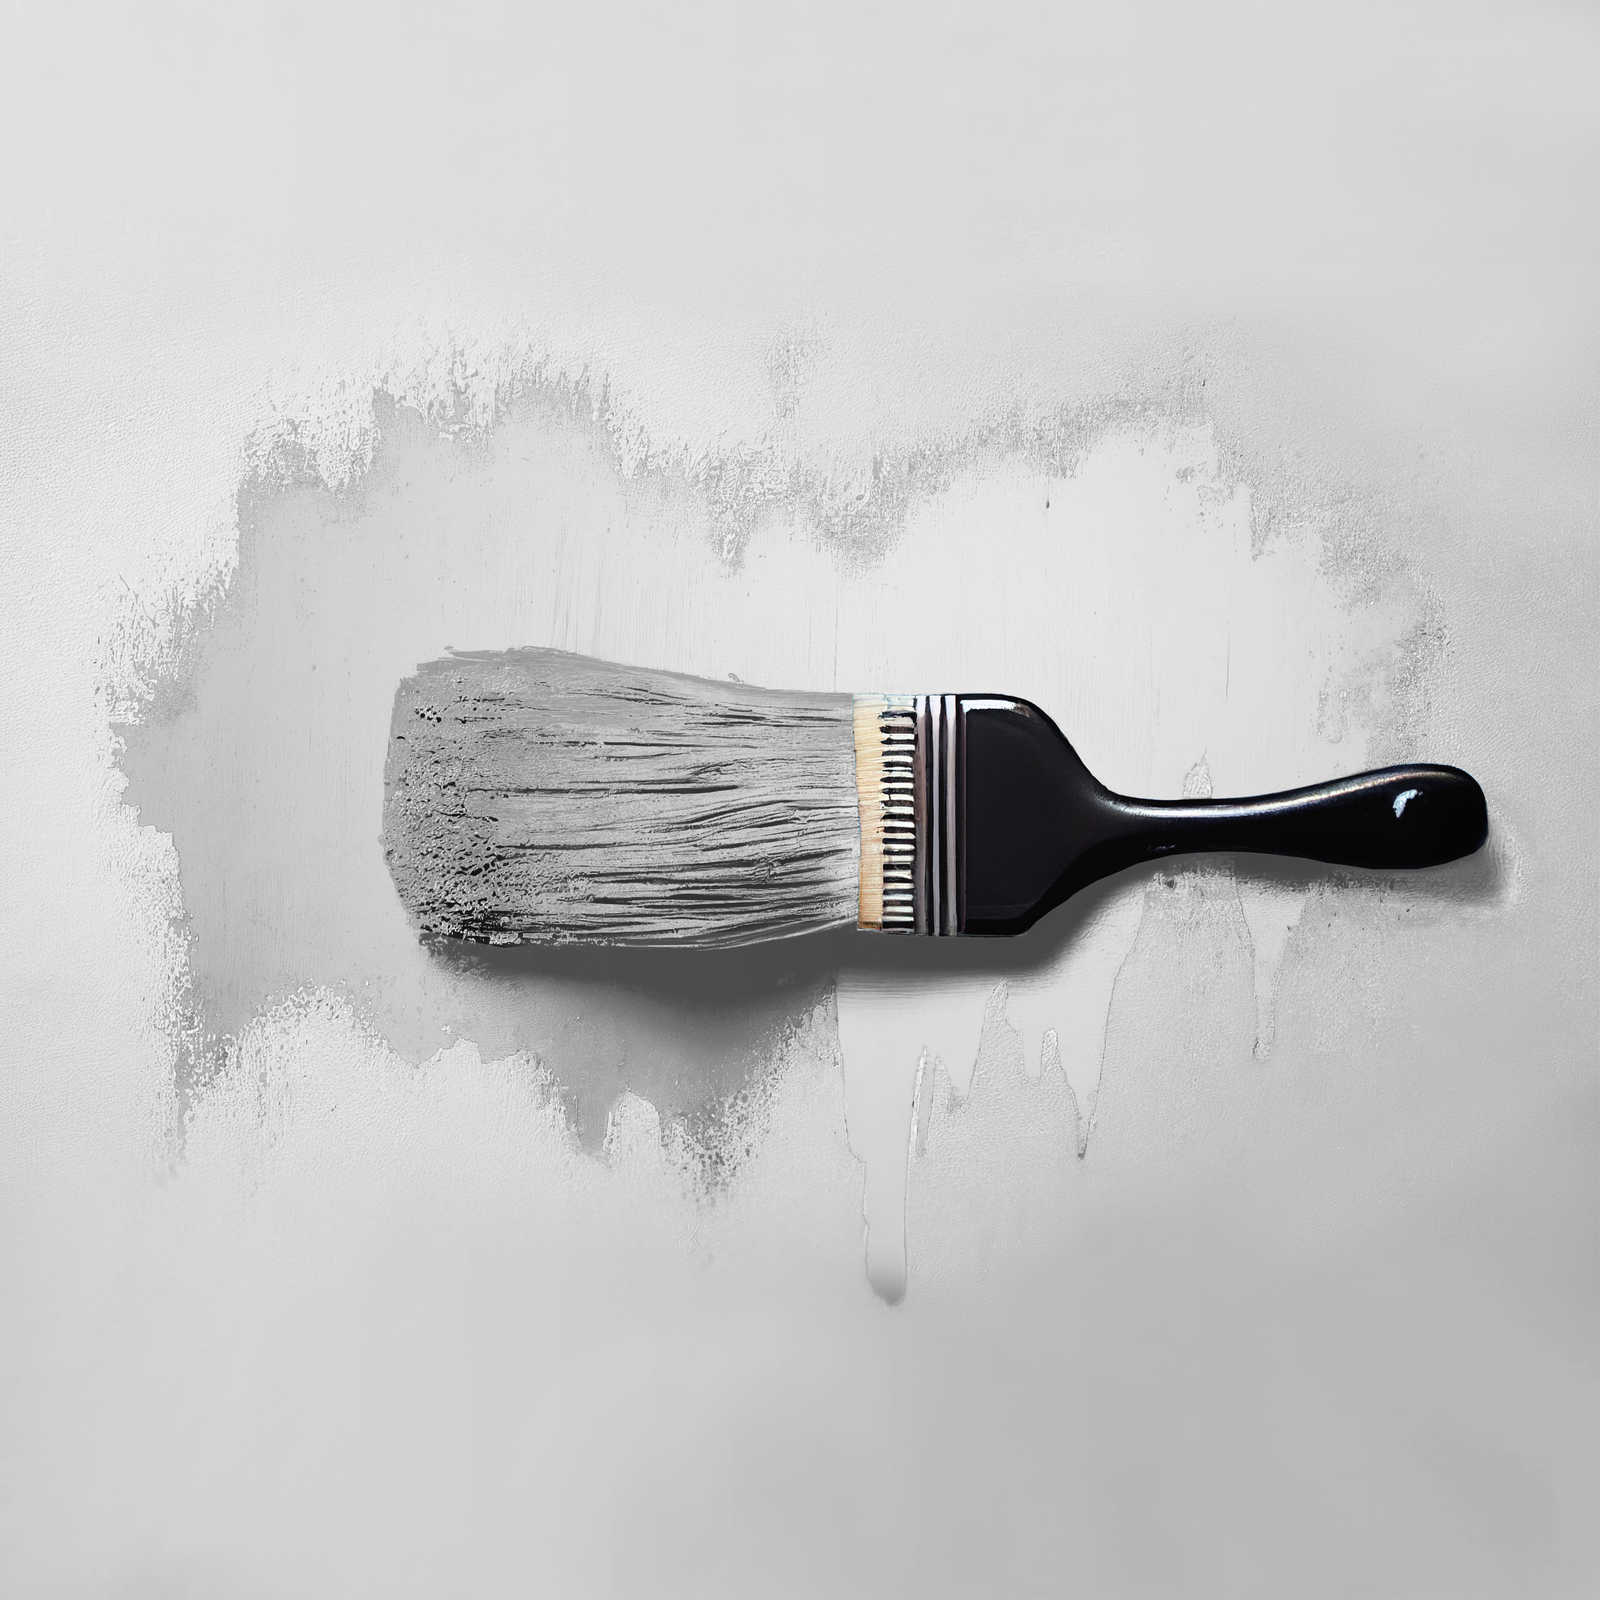             Pittura murale TCK1002 »Asian Noodles« in grigio chiaro armonizzante – 2,5 litri
        